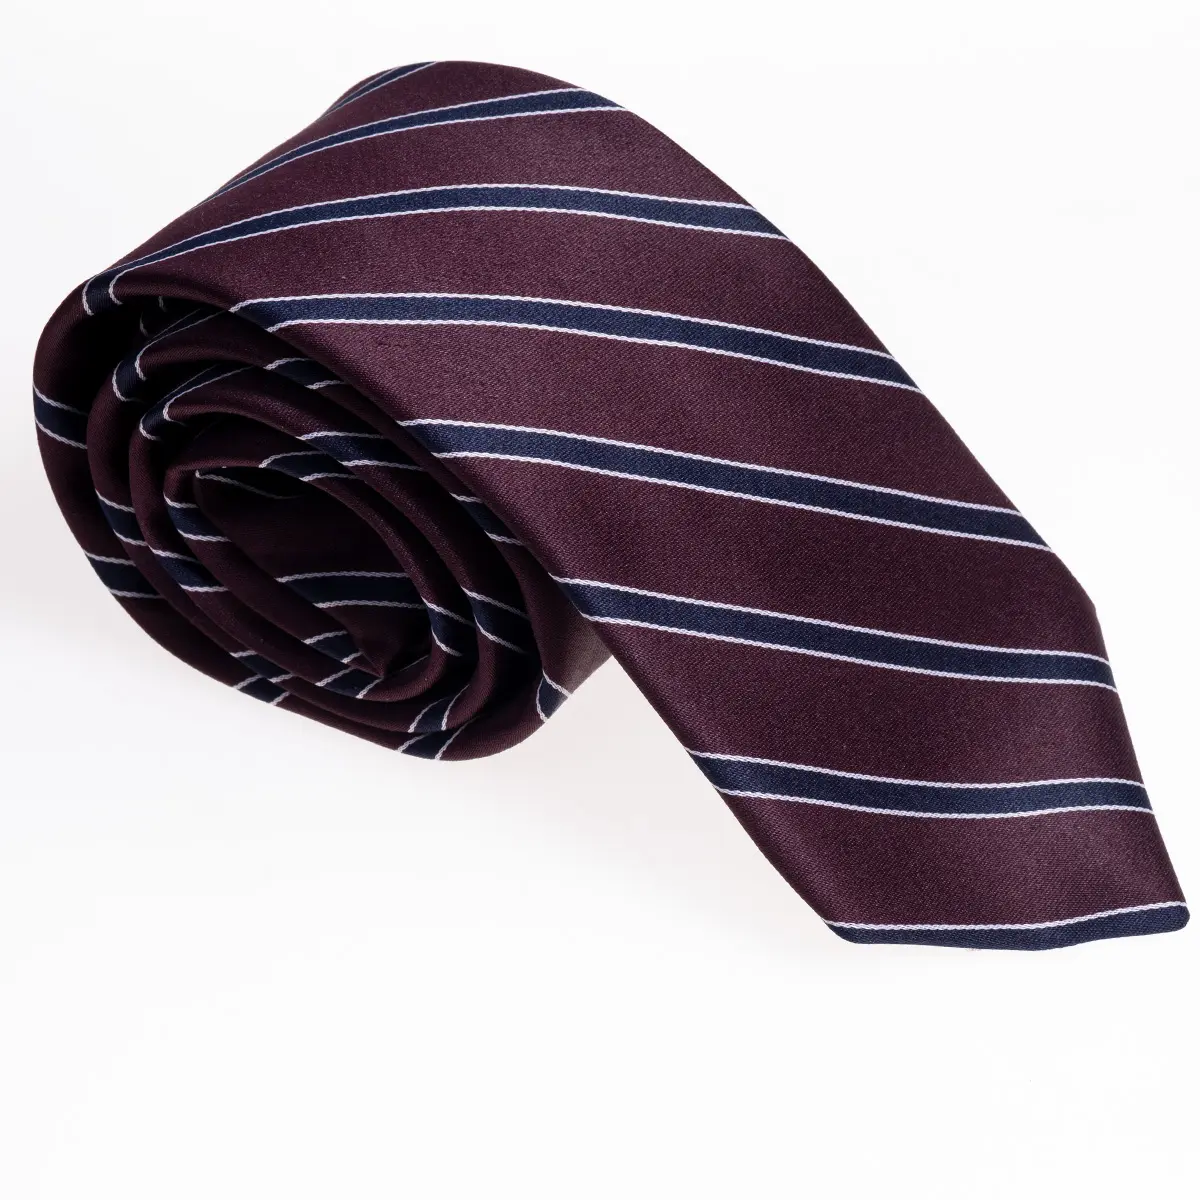 Bordo çizgili mavi çizgiler ipek kravat, kravat, boyun kravat, Corbata, Gravate, Krawatte, Cravatta, moda çevik tedarik zincirleri